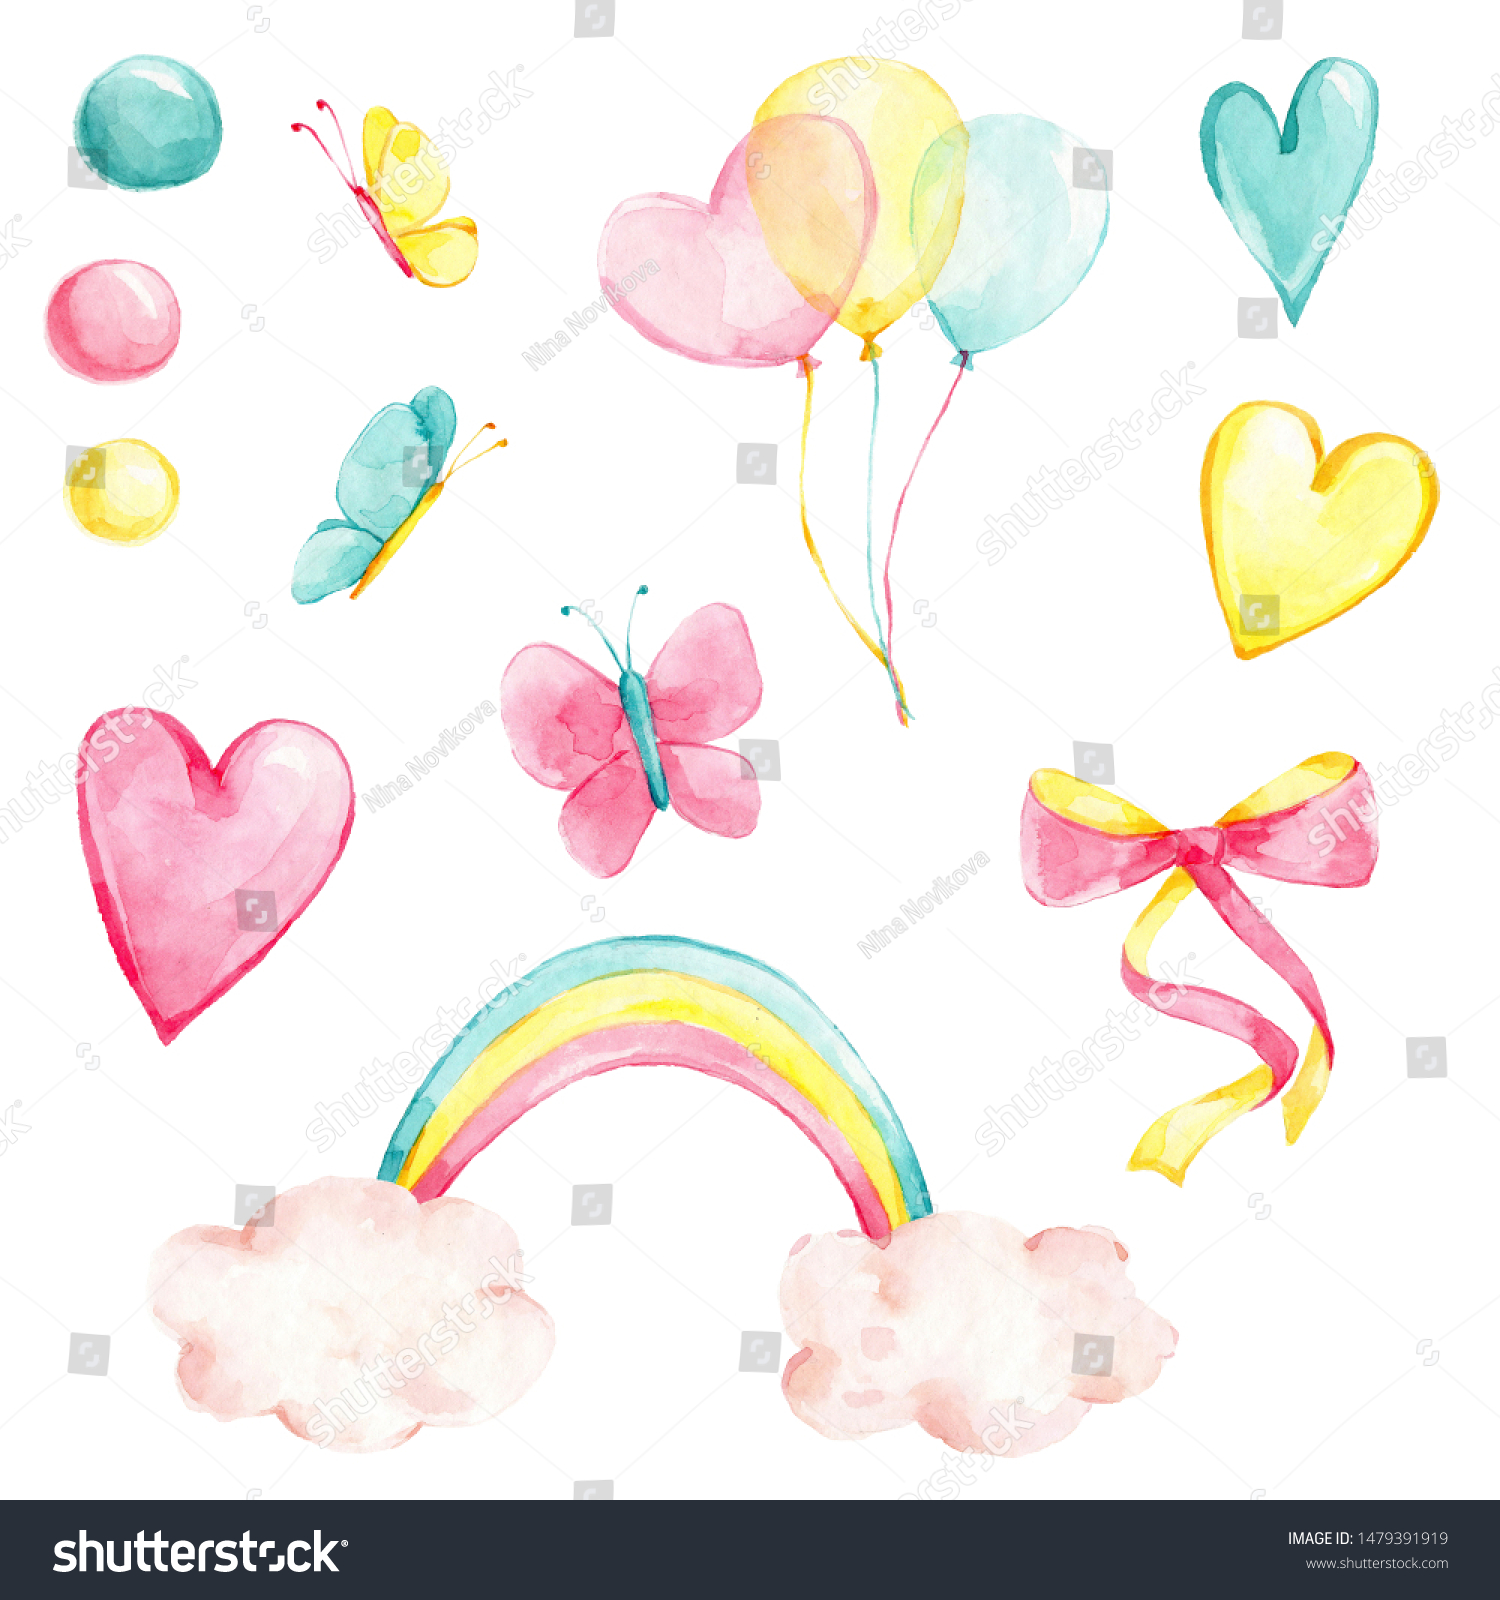 クリエイティブな虹 パステル風船 ピンク 黄色と青のハート 円 かわいい蝶 ピンクと黄色のリボン 蝶結び を使った水彩手描きのイラスト セット 白い背景に のイラスト素材